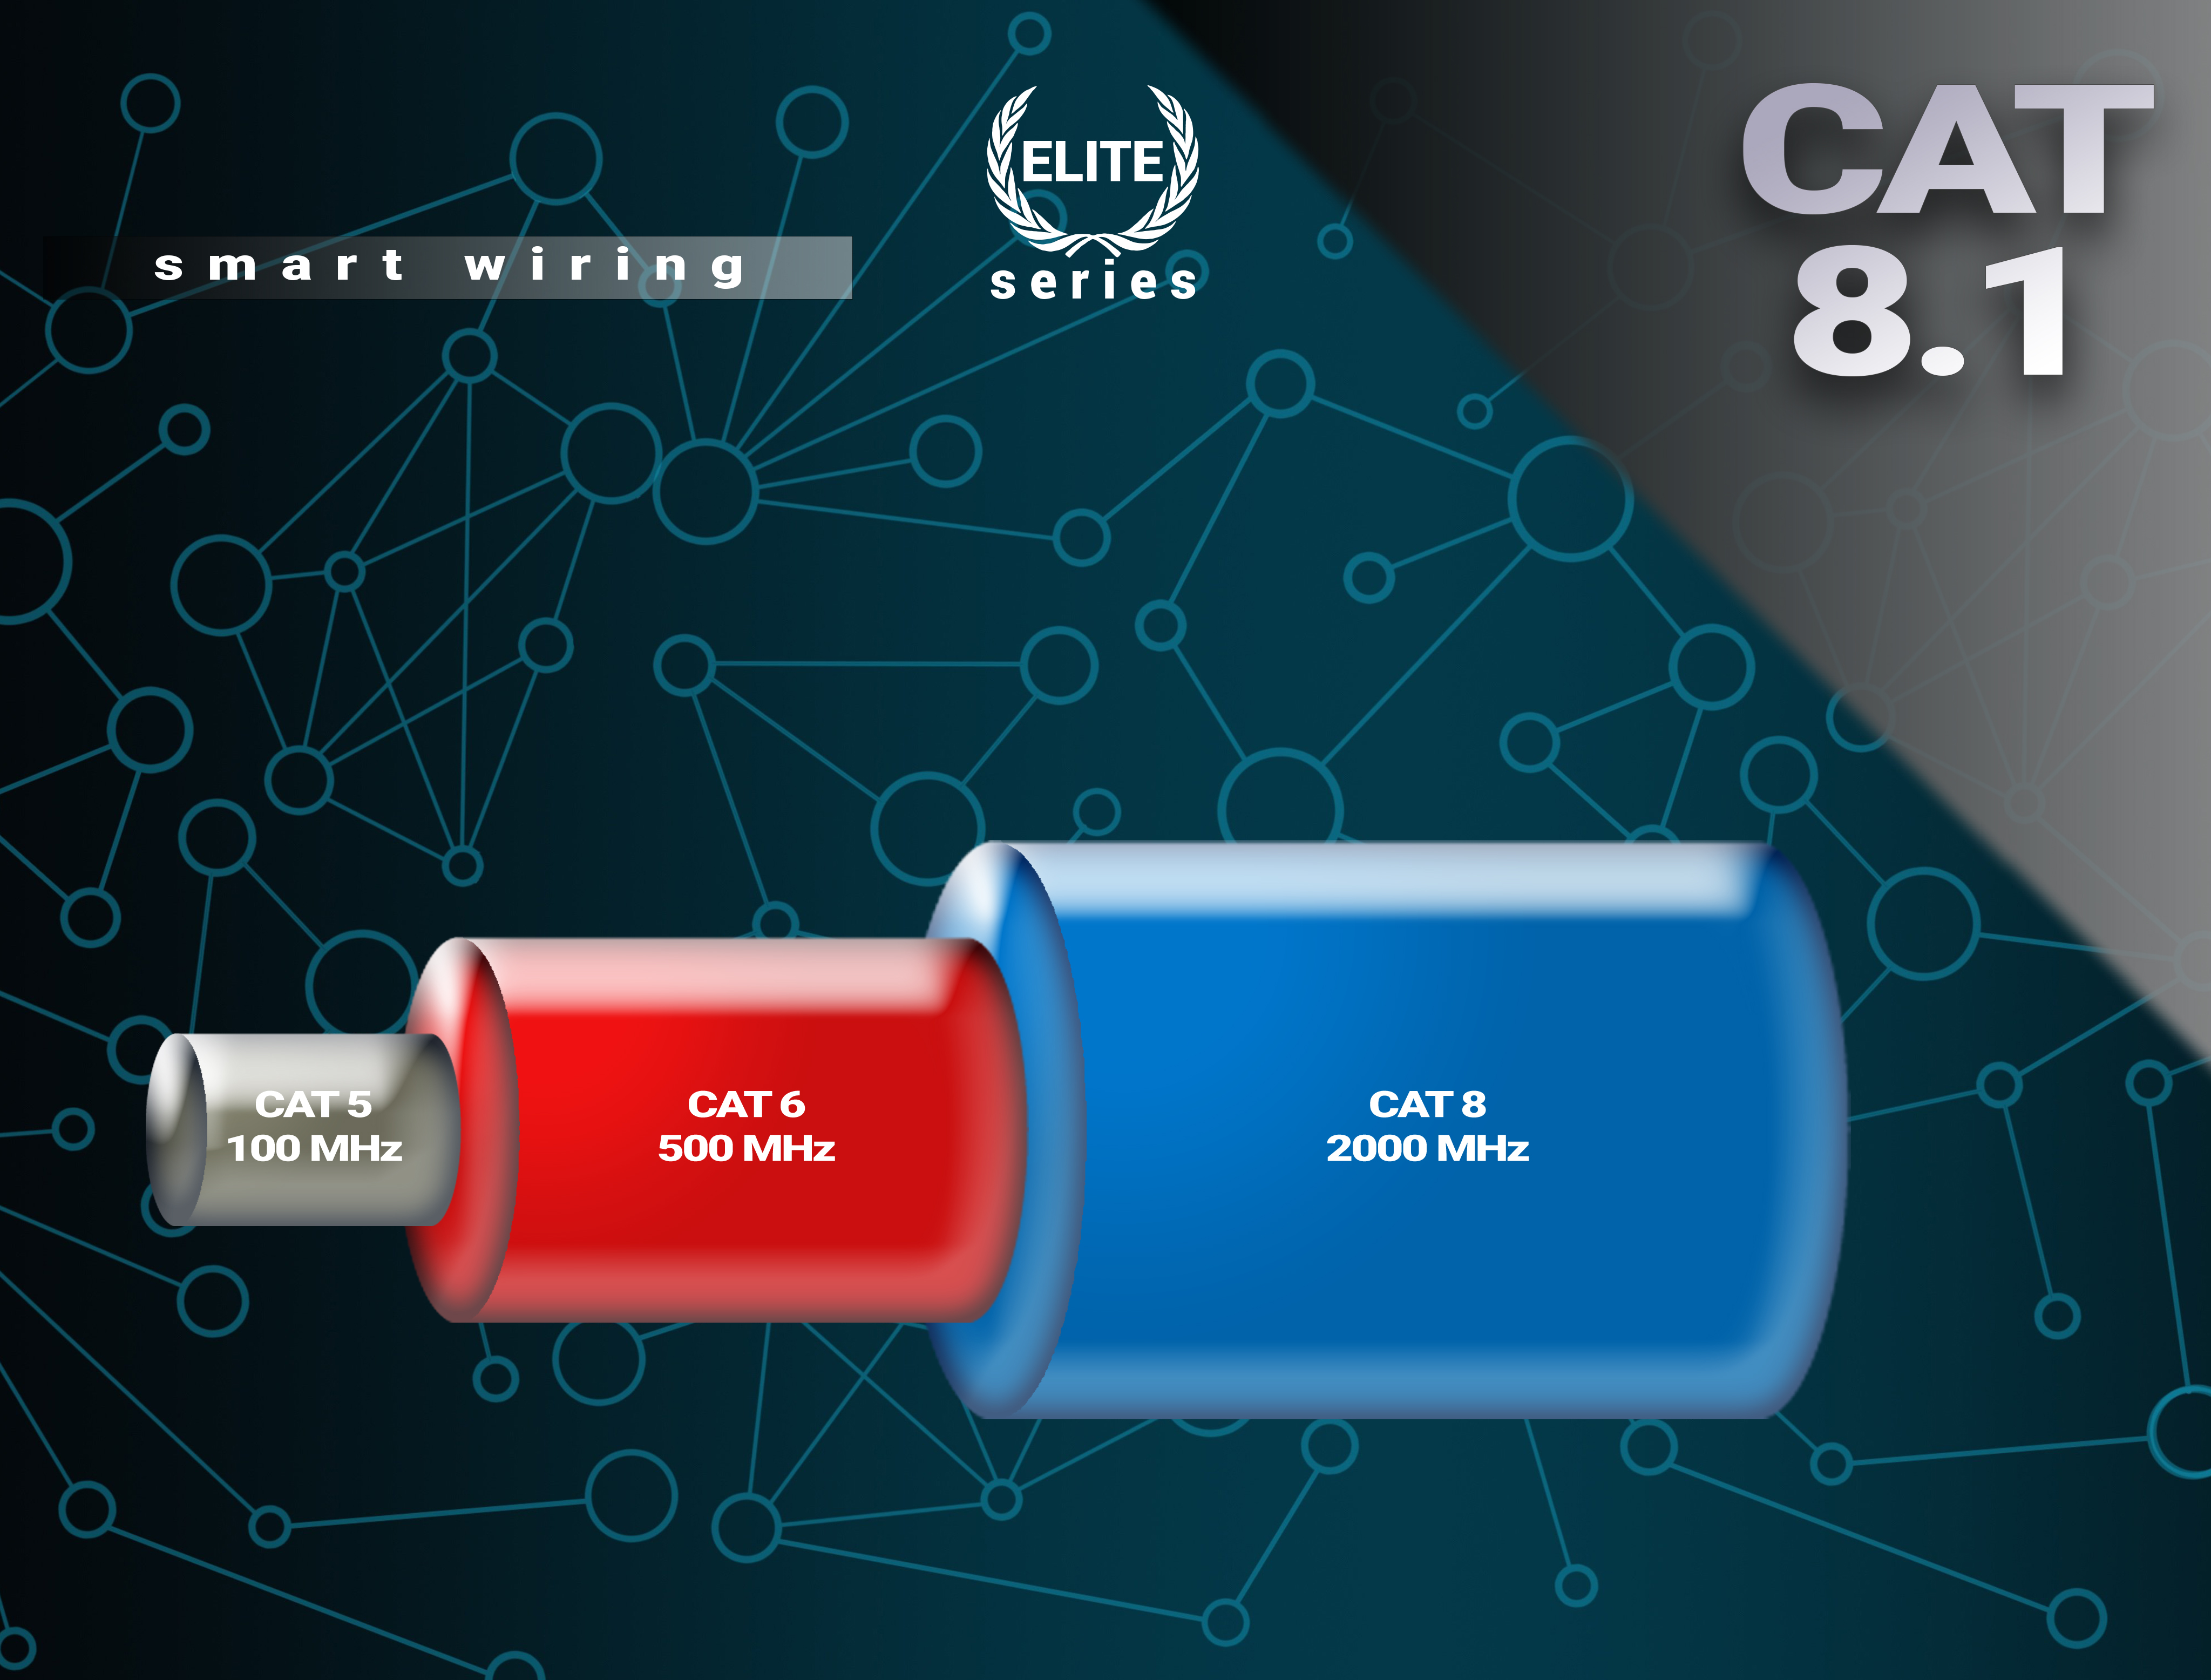 BIVANI Premium 40 Gbps LAN Kabel Elite-Series, 1 CAT m Netzwerkkabel, 8.1 